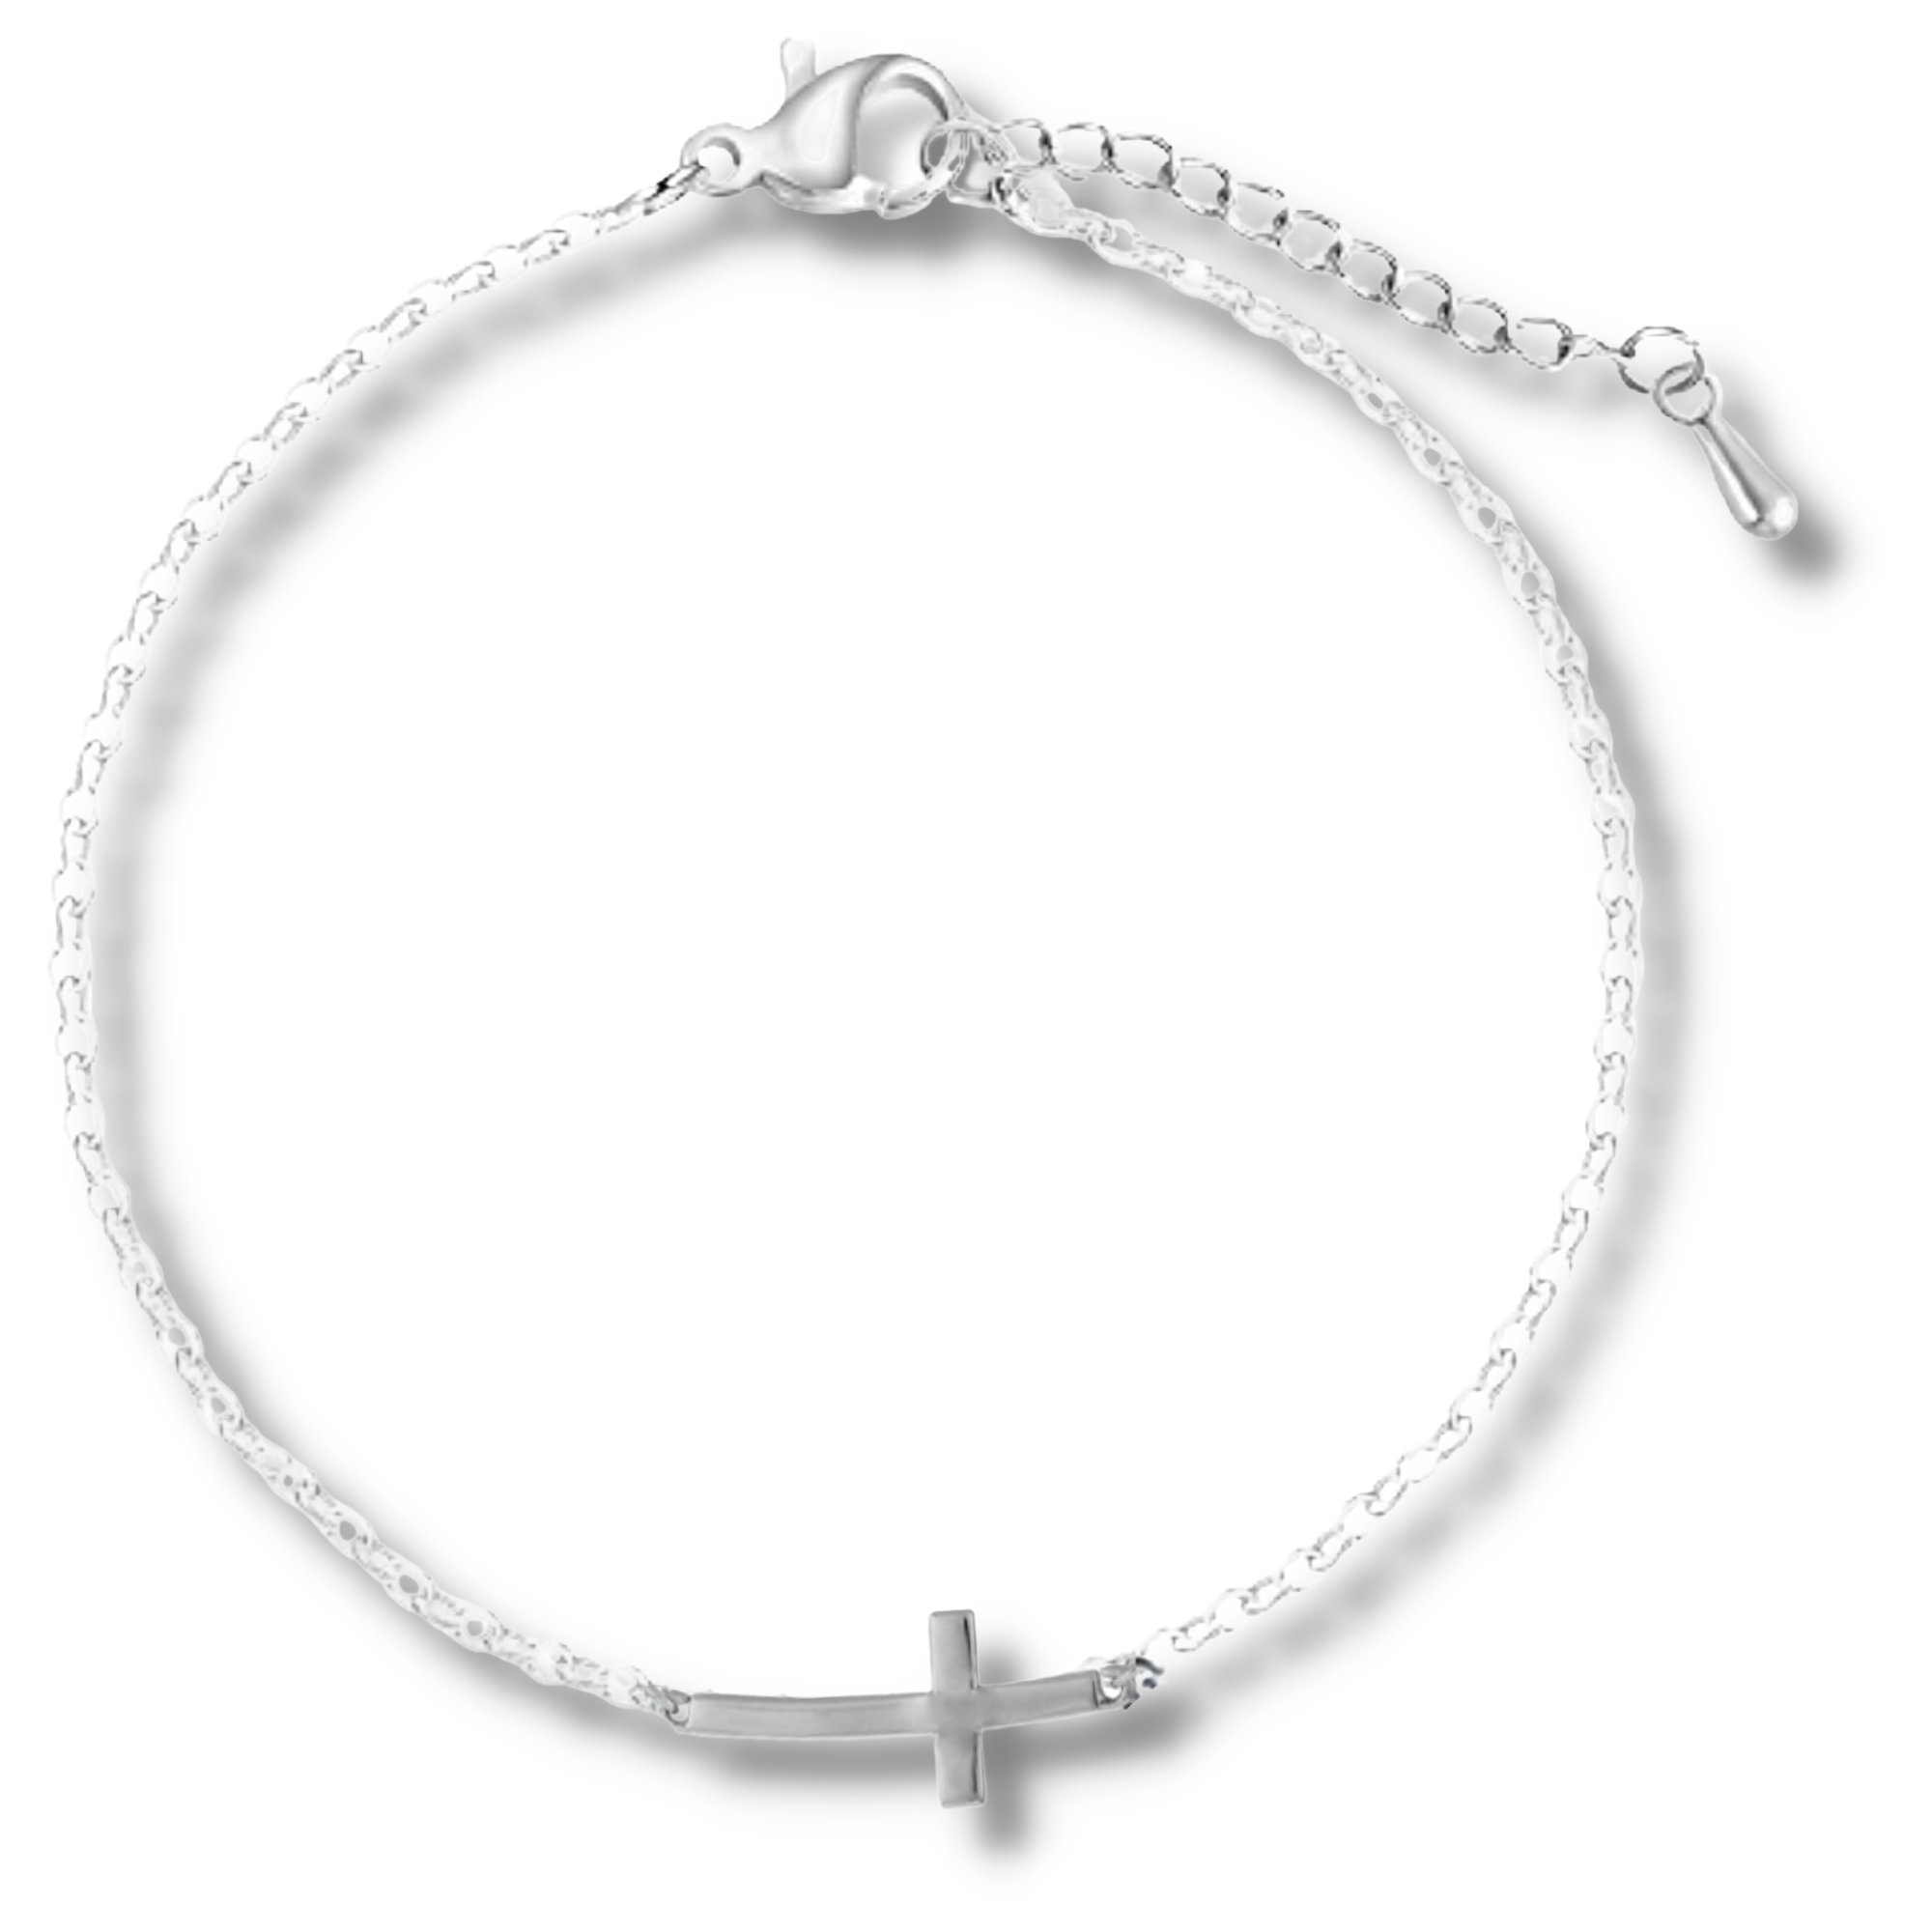 Cross Bracelet